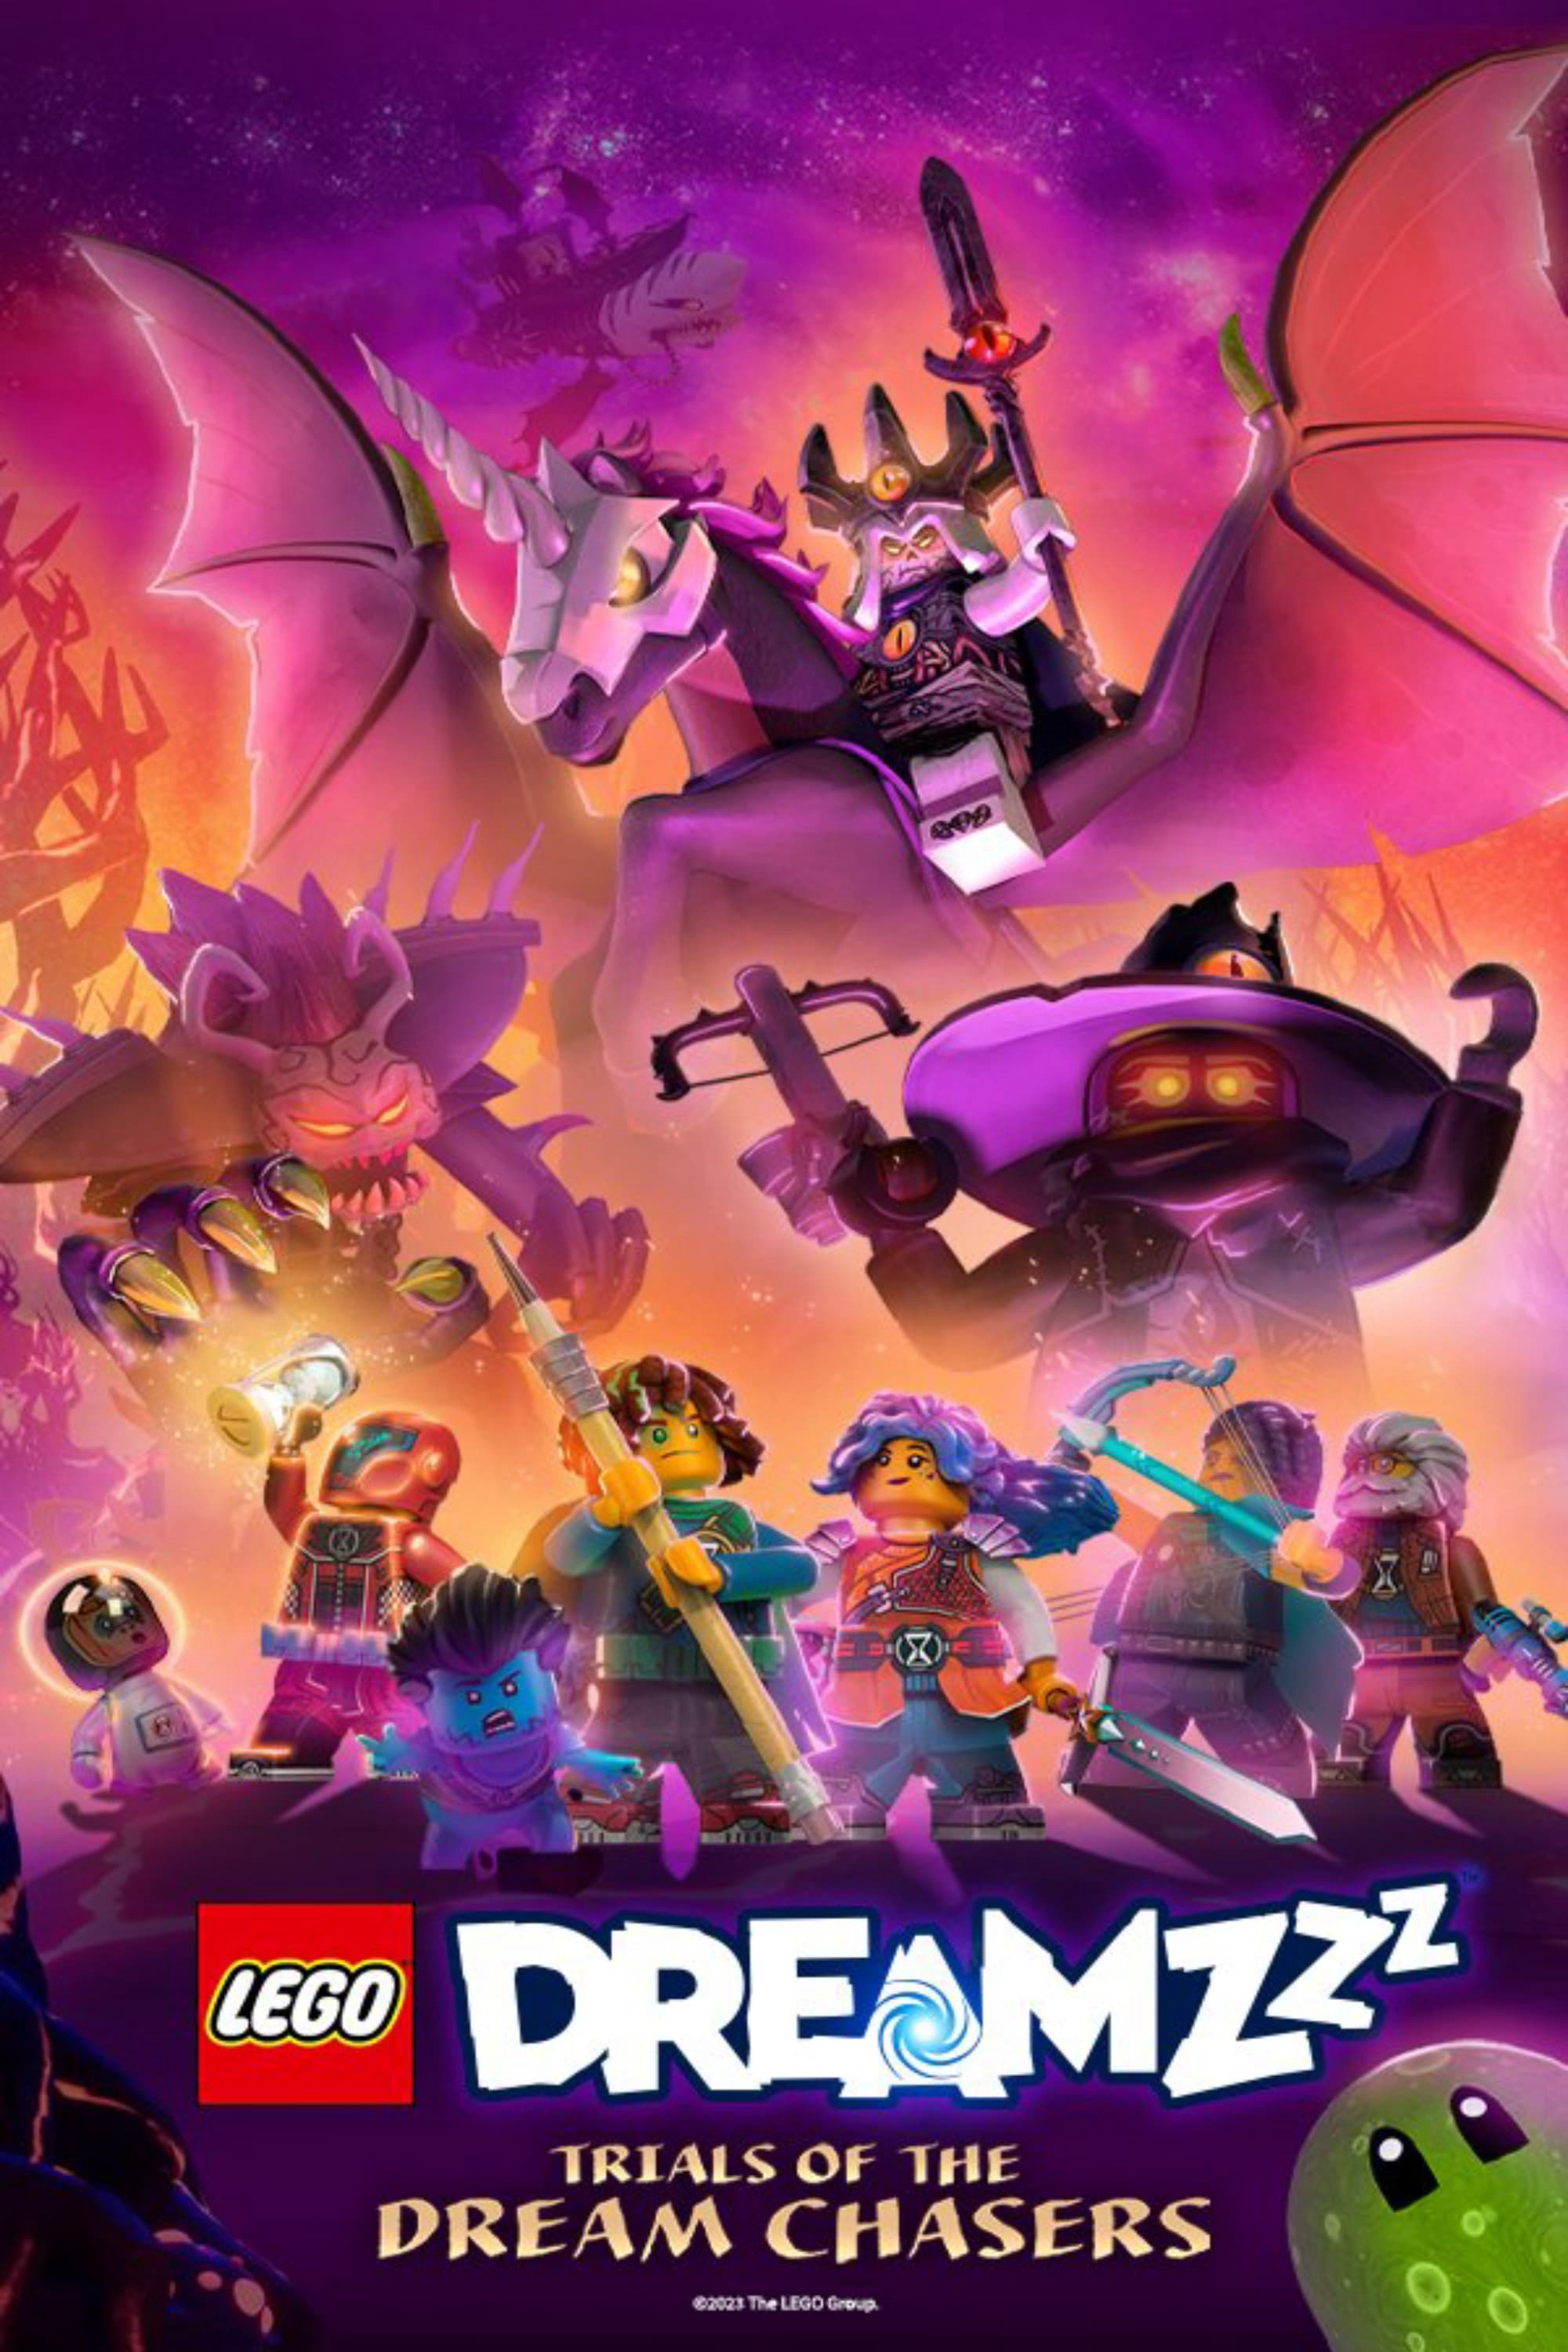 Poster Phim LEGO Dreamzzz (LEGO Dreamzzz)